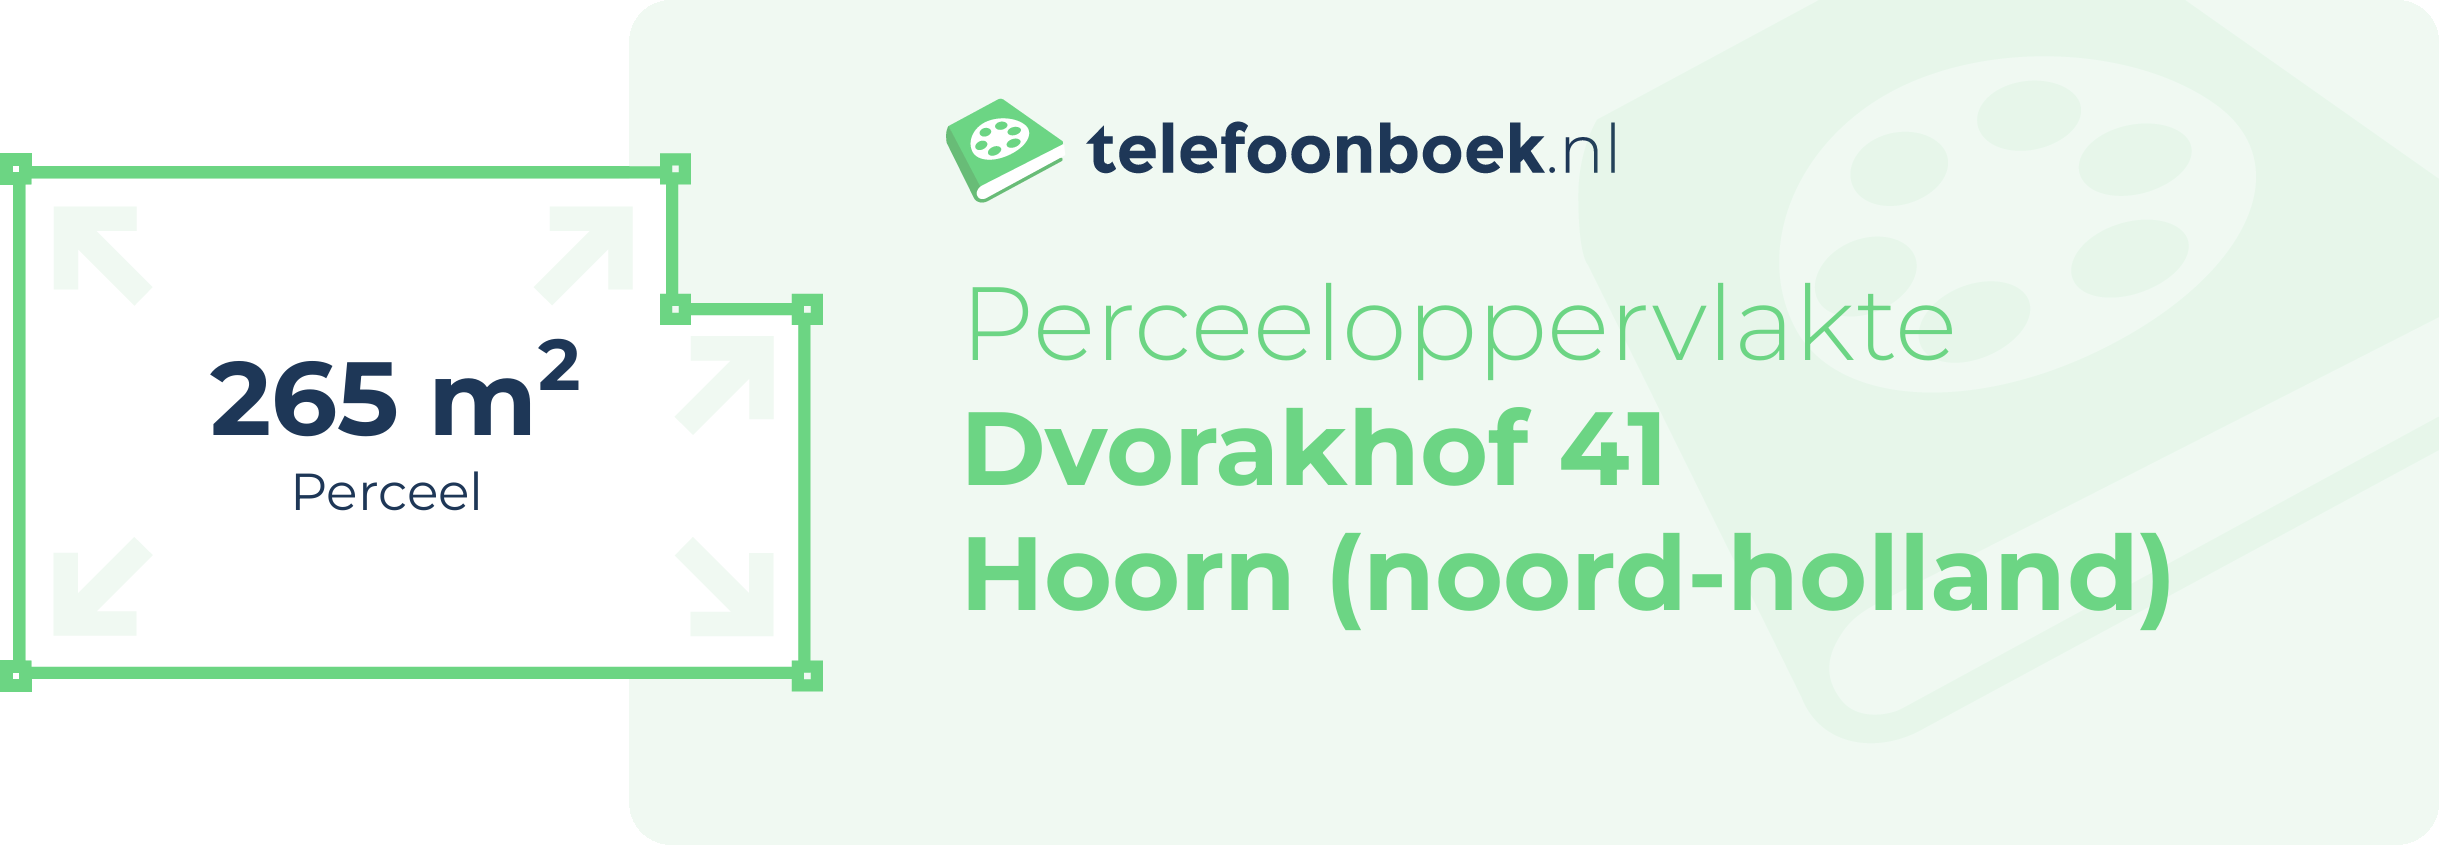 Perceeloppervlakte Dvorakhof 41 Hoorn (Noord-Holland)